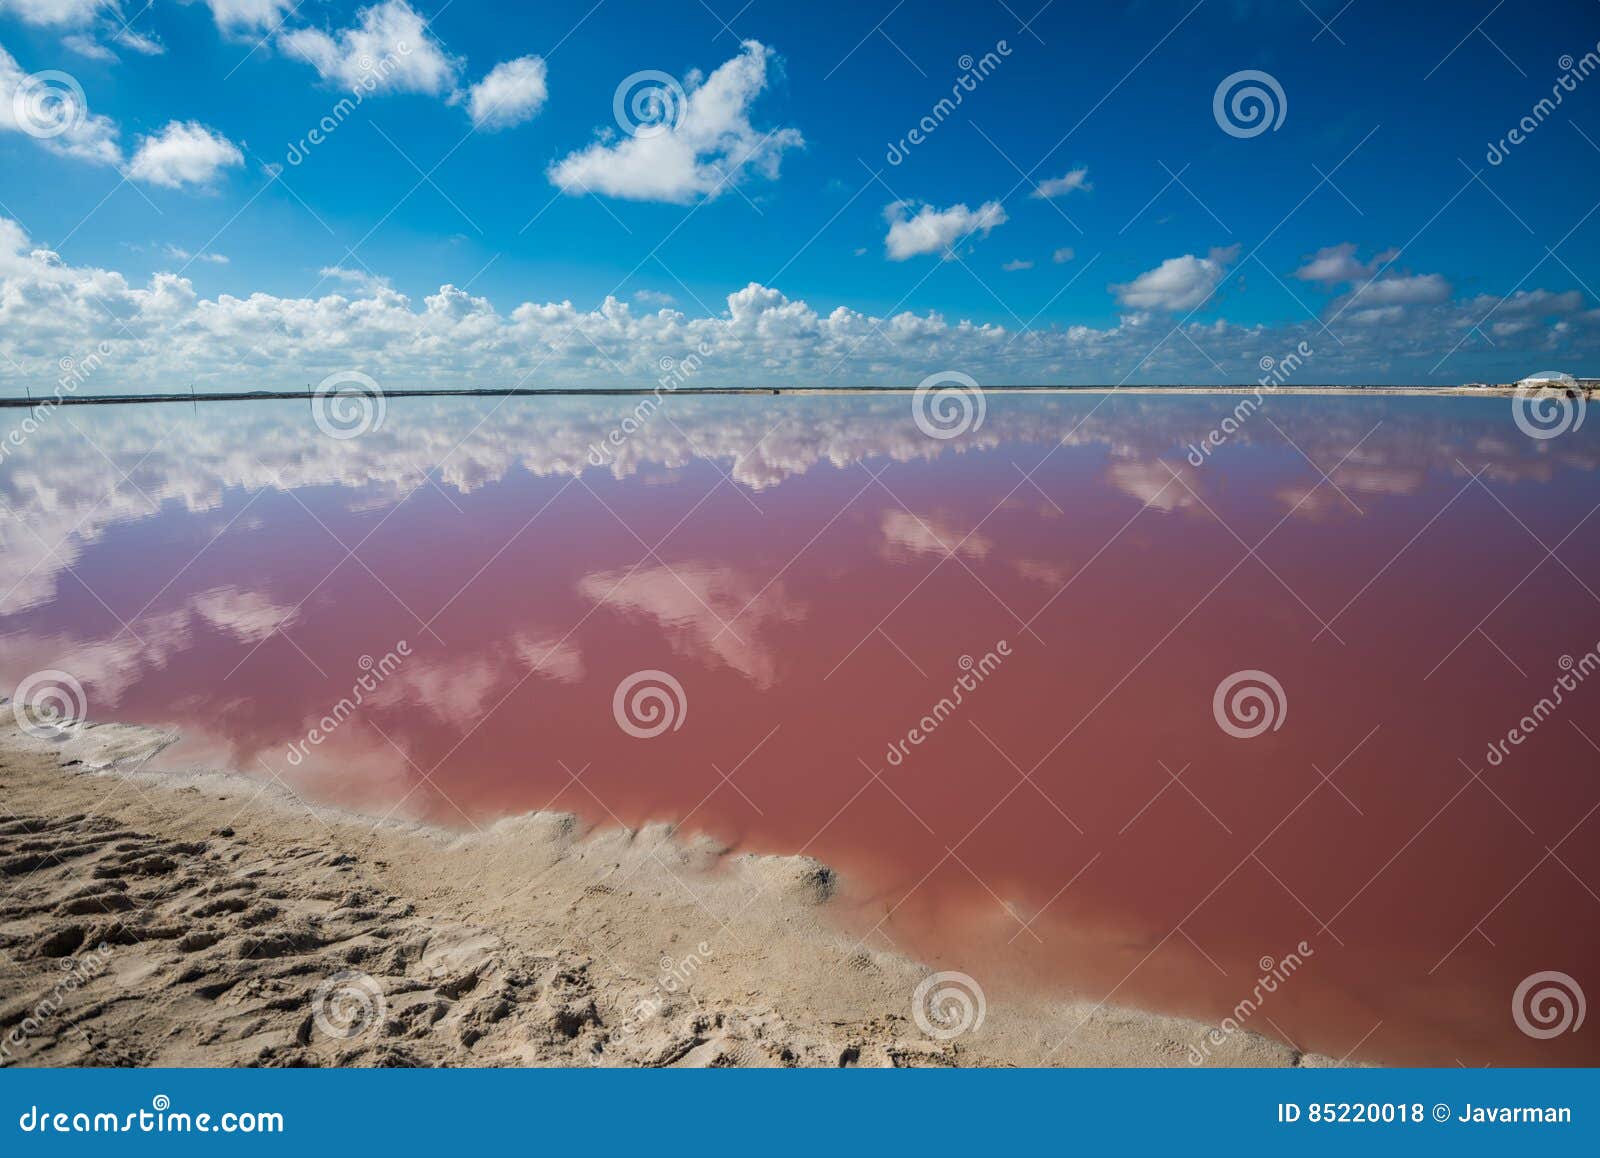 salt pink lagoon in las coloradas, yucatan, mexico